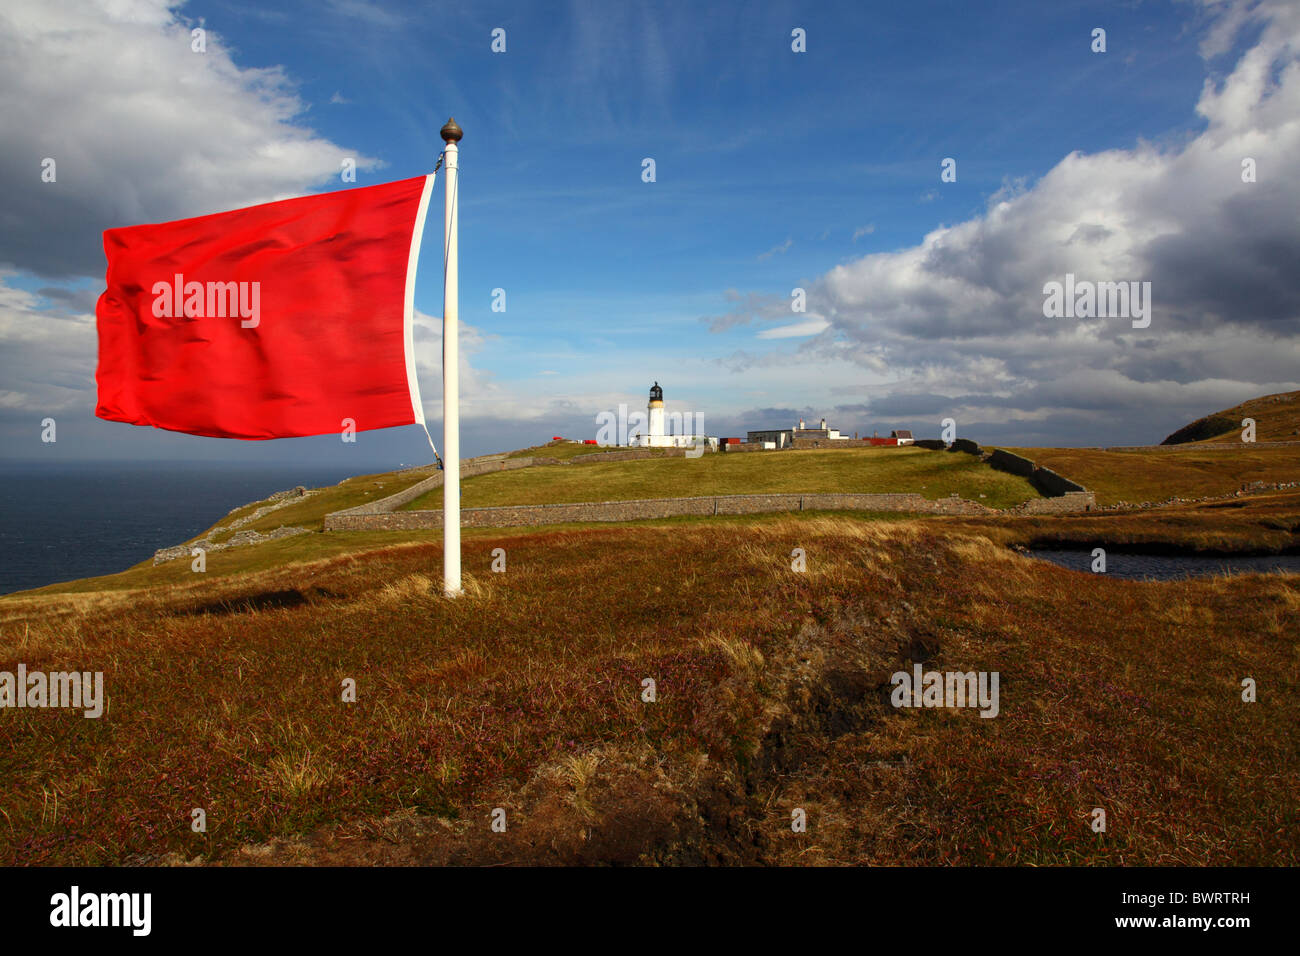 Rote aktive Warnung Flagge für MOD Schießplatz am Cape Wrath Leuchtturm, Sutherland, Far North West Schottland, Highlands, UK. Stockfoto